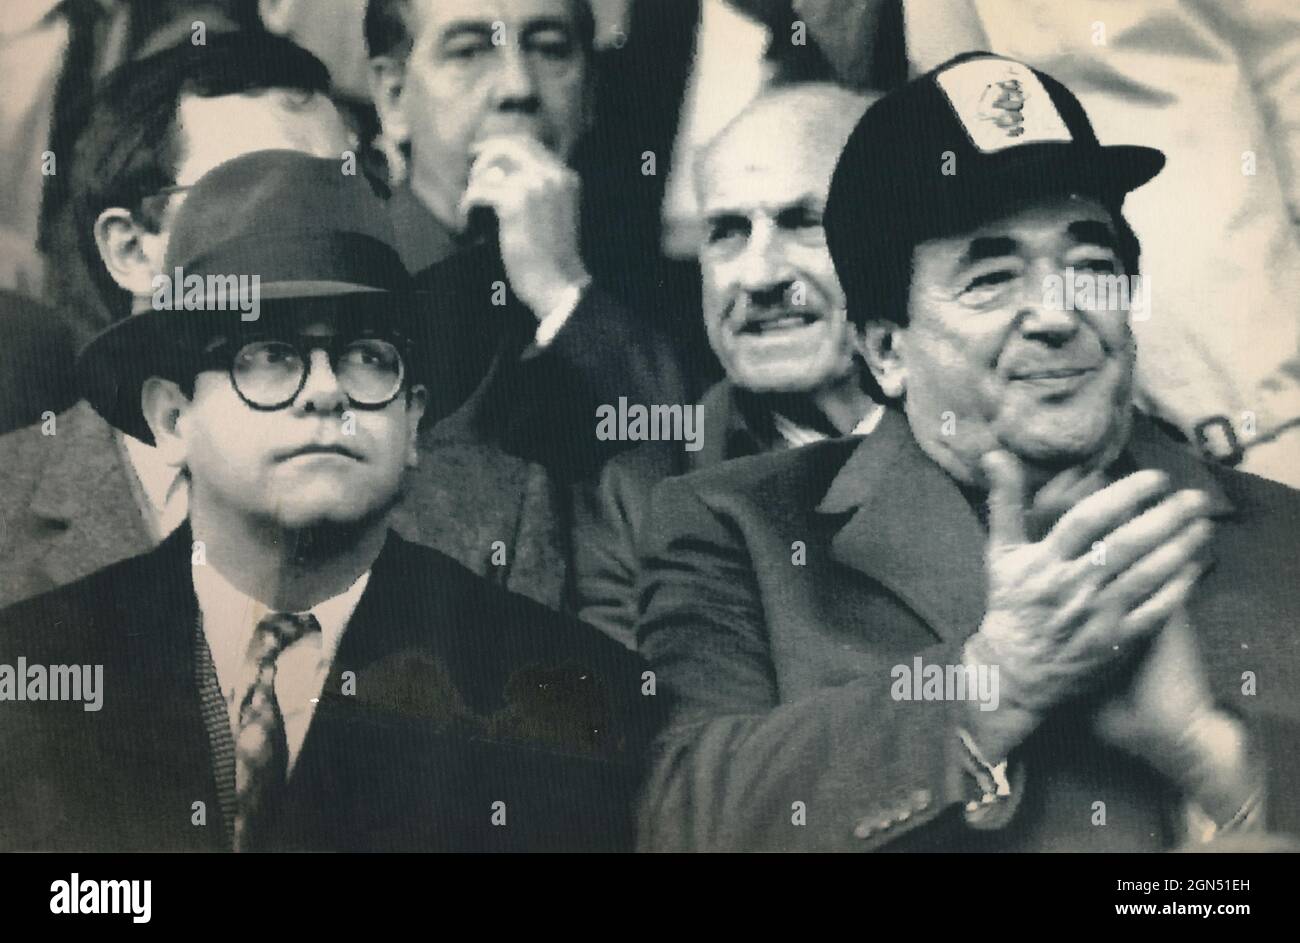 El cantante inglés Elton John y el magnate de los medios Robert Maxwell en el estadio, 1989 Foto de stock